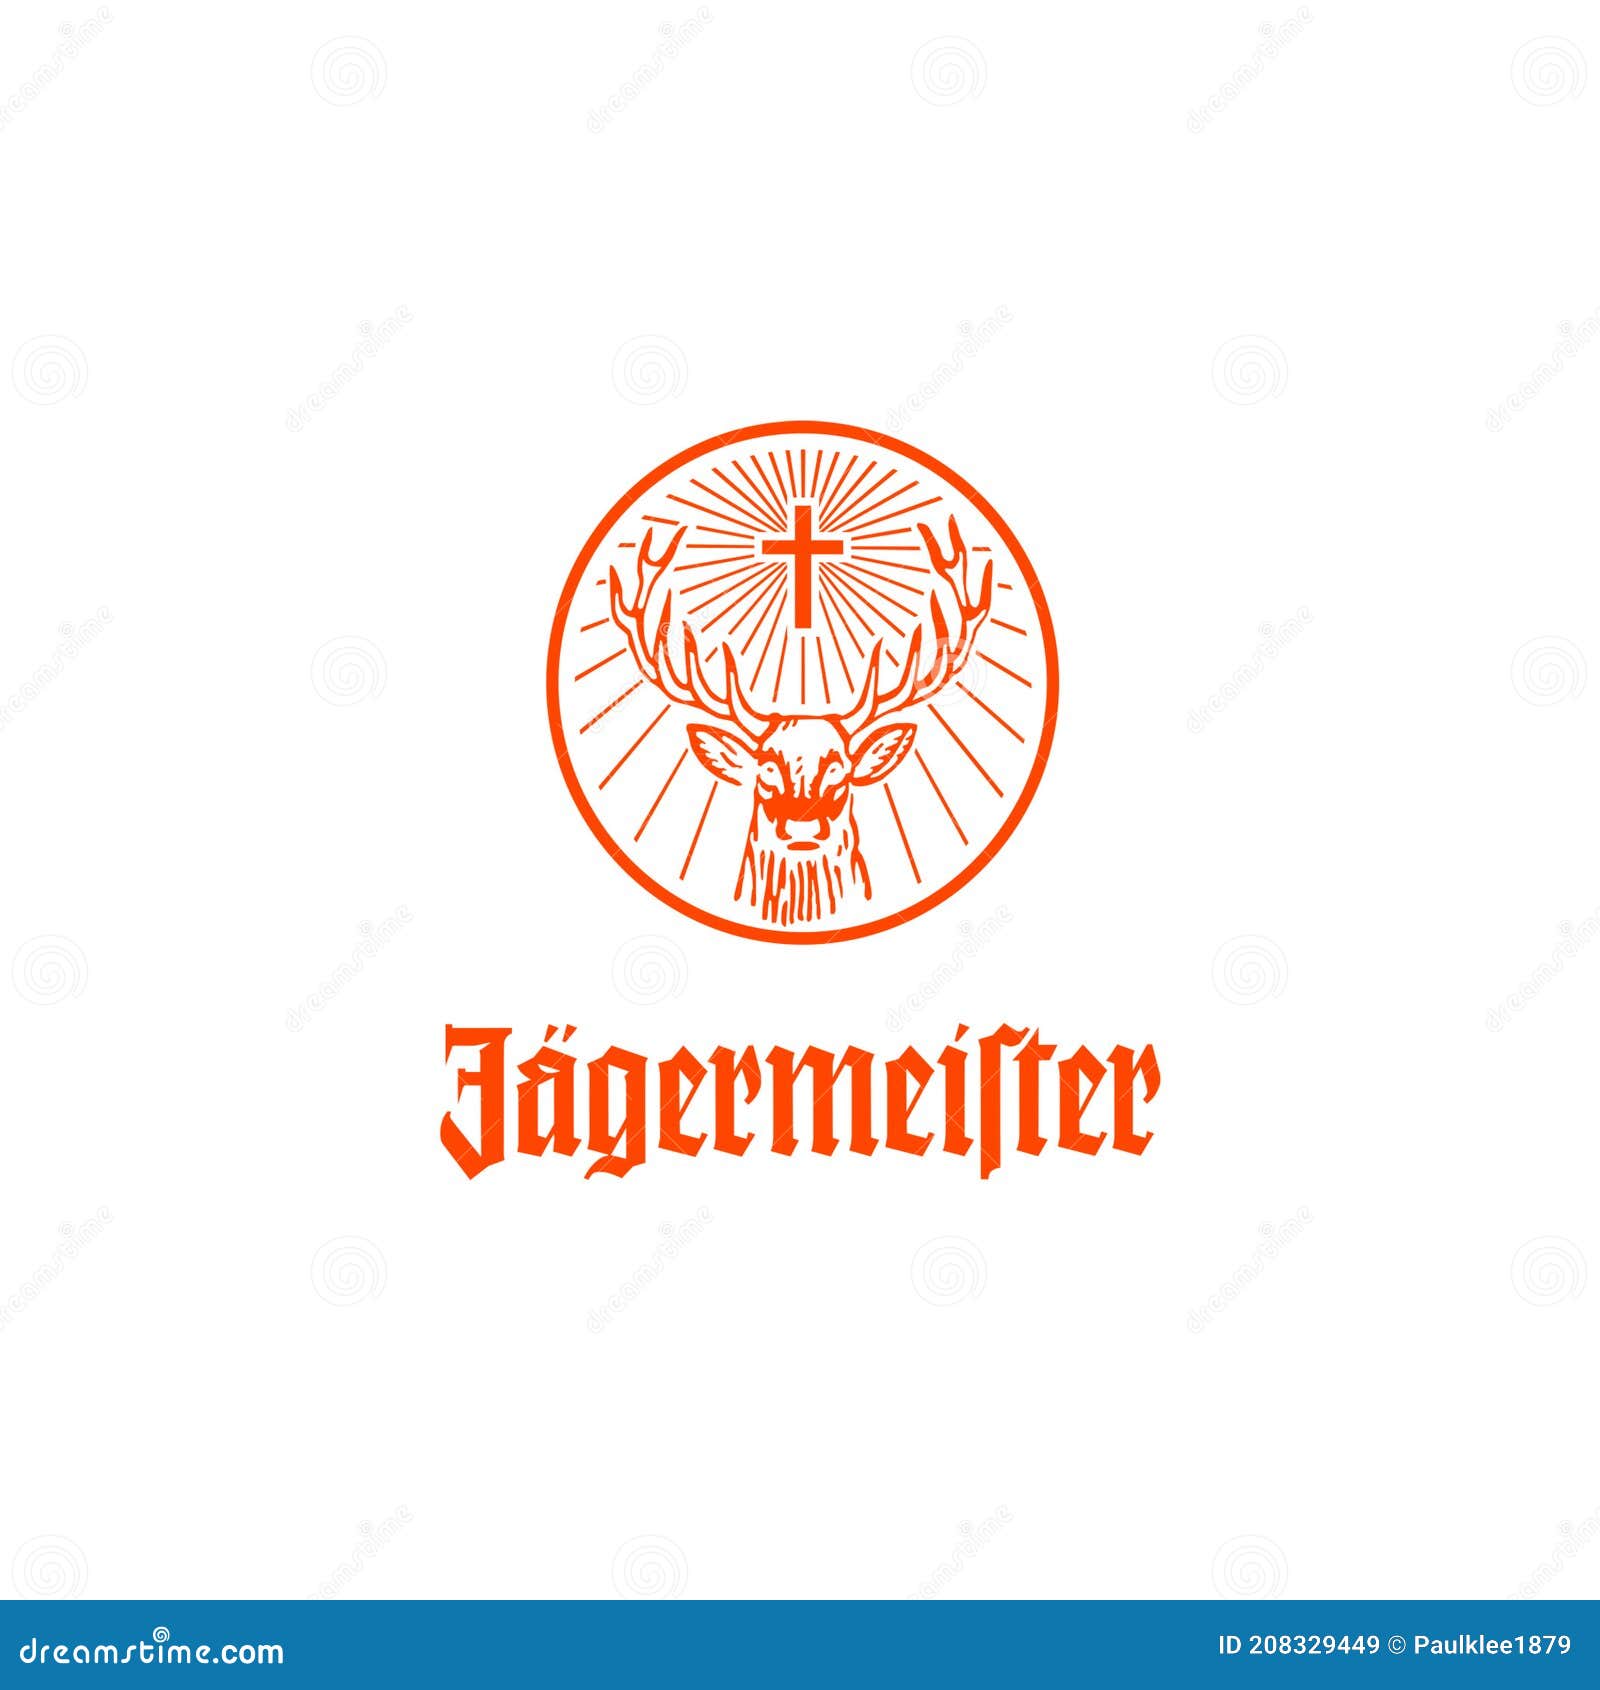 Jagermeister Logoleitartikel Veranschaulichung Auf Weißem Hintergrund  Redaktionelles Stockbild - Illustration von illustrativ, beschaffenheit:  208329449